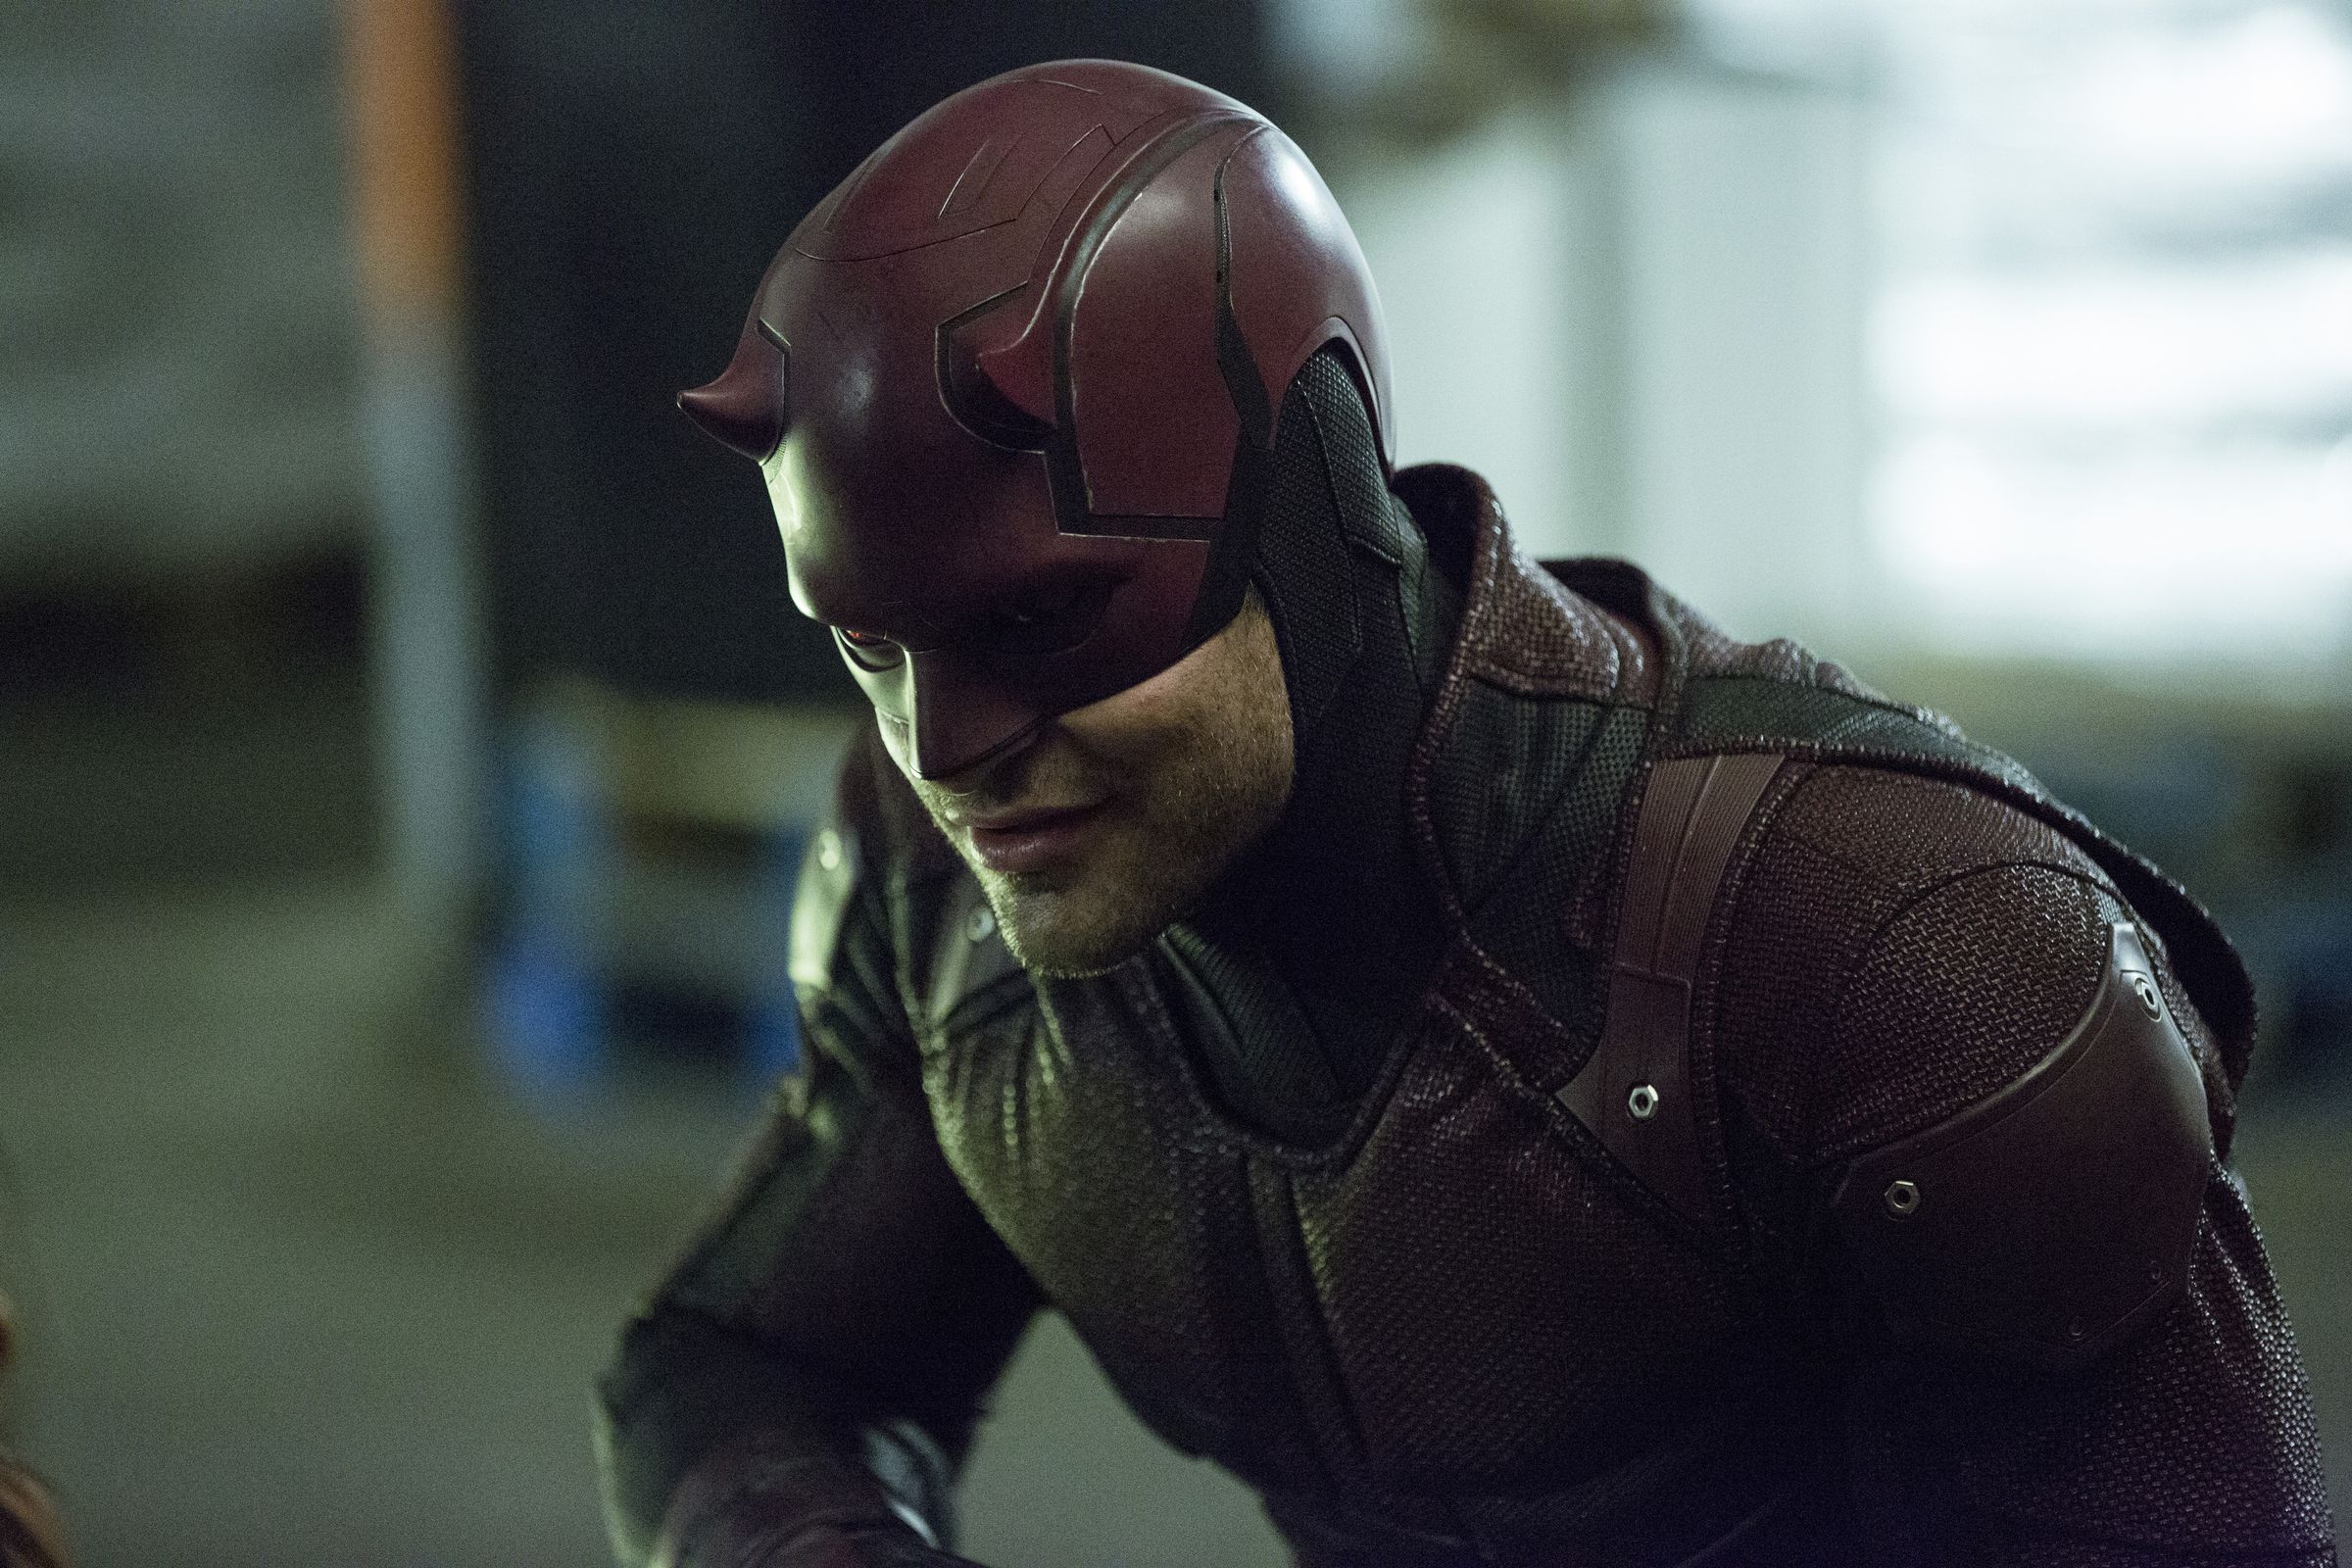 Charlie Cox as Daredevil in Netflix’s Daredevil series.